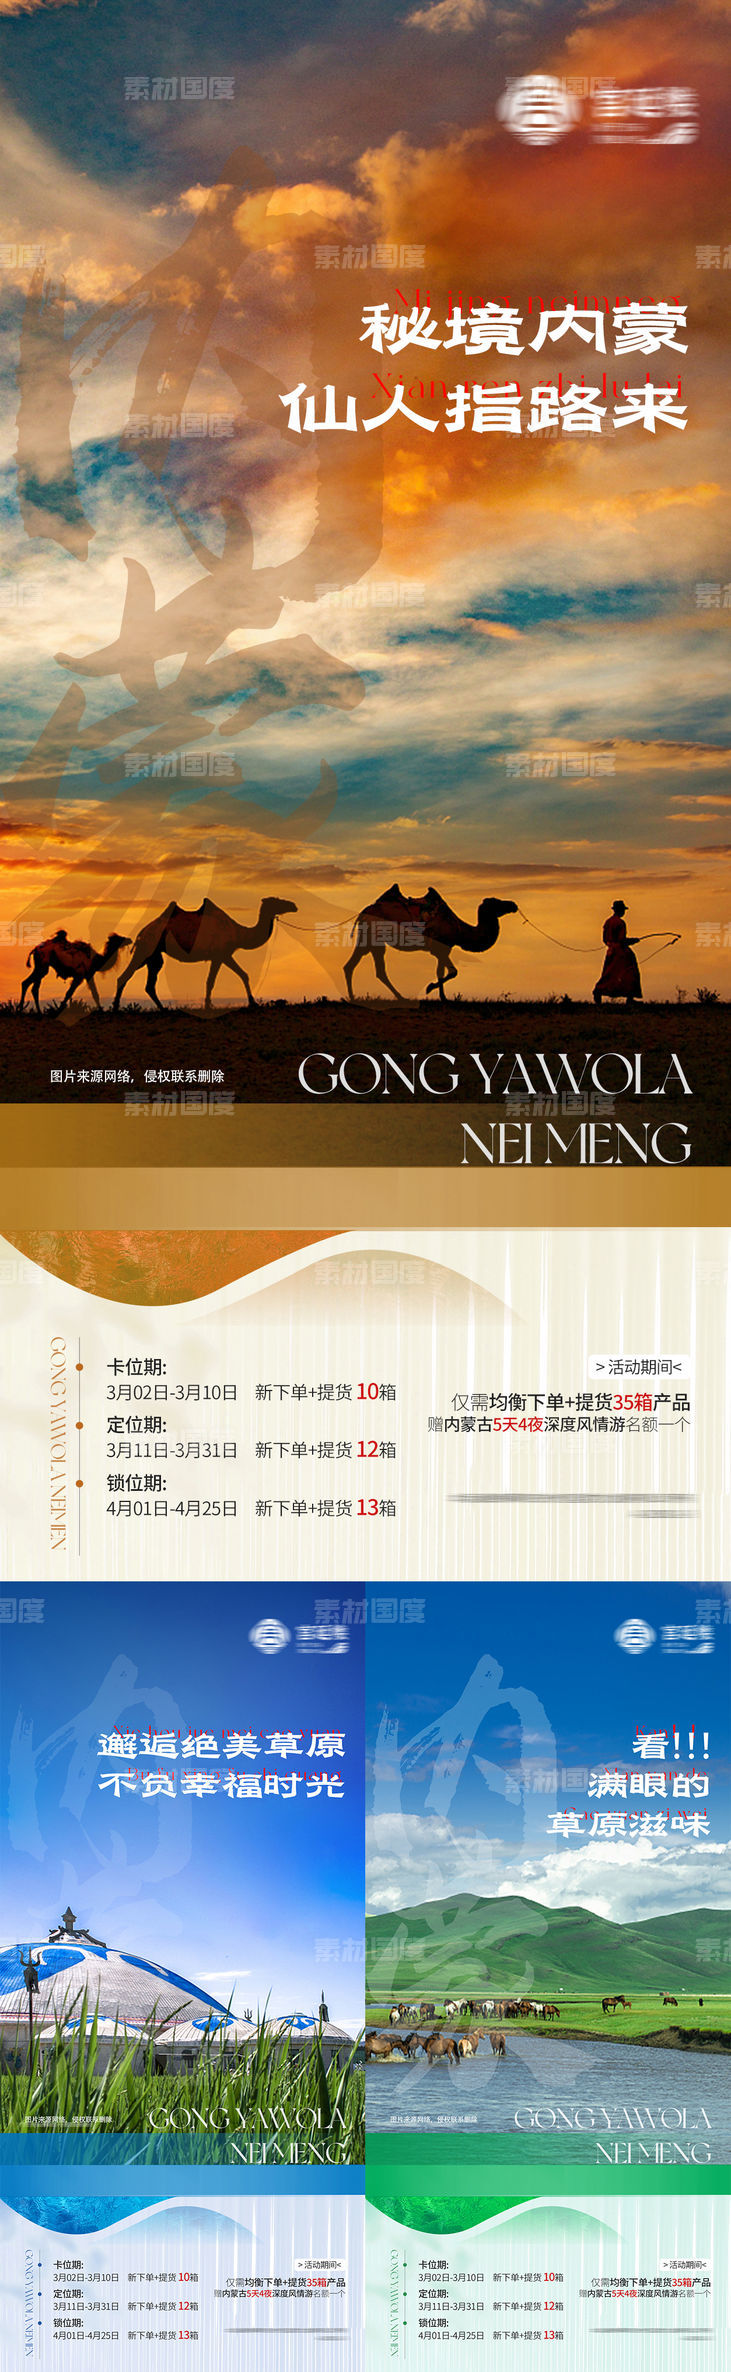 内蒙古呼和浩特旅游海报